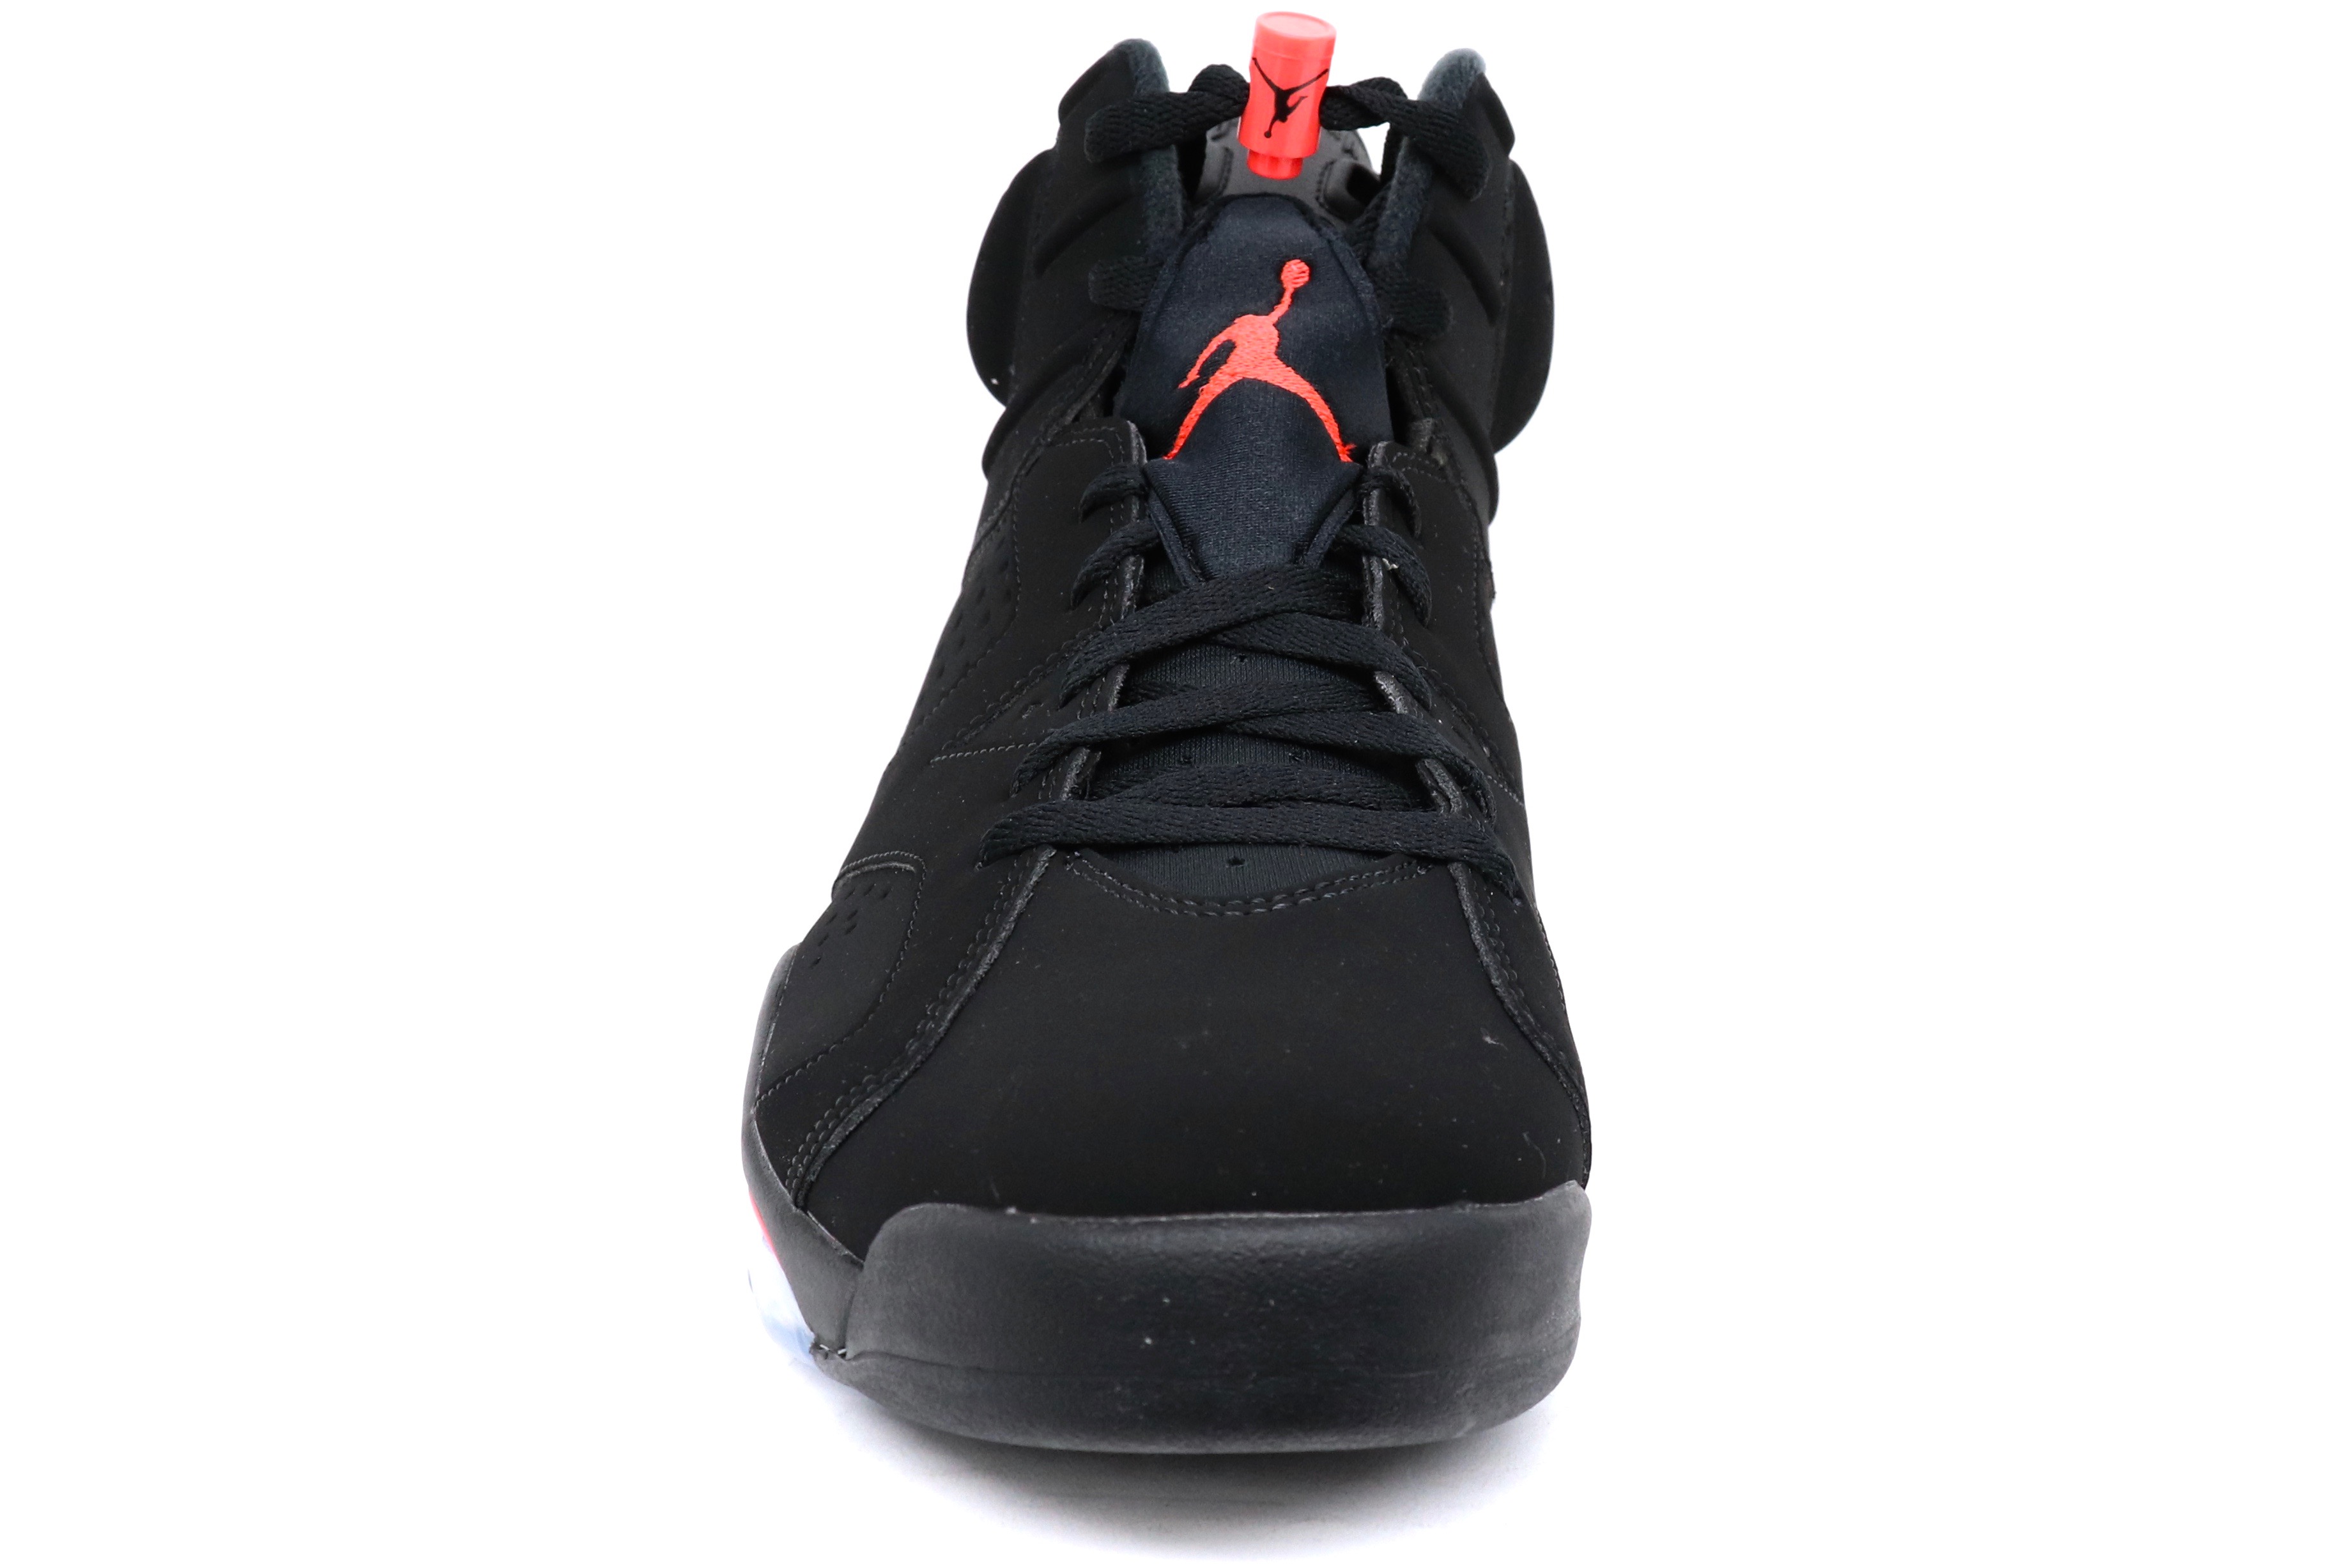 (Men's) Air Jordan 6 Retro 'Black / Infrared' (2019) 384664-060 - image 3 of 6